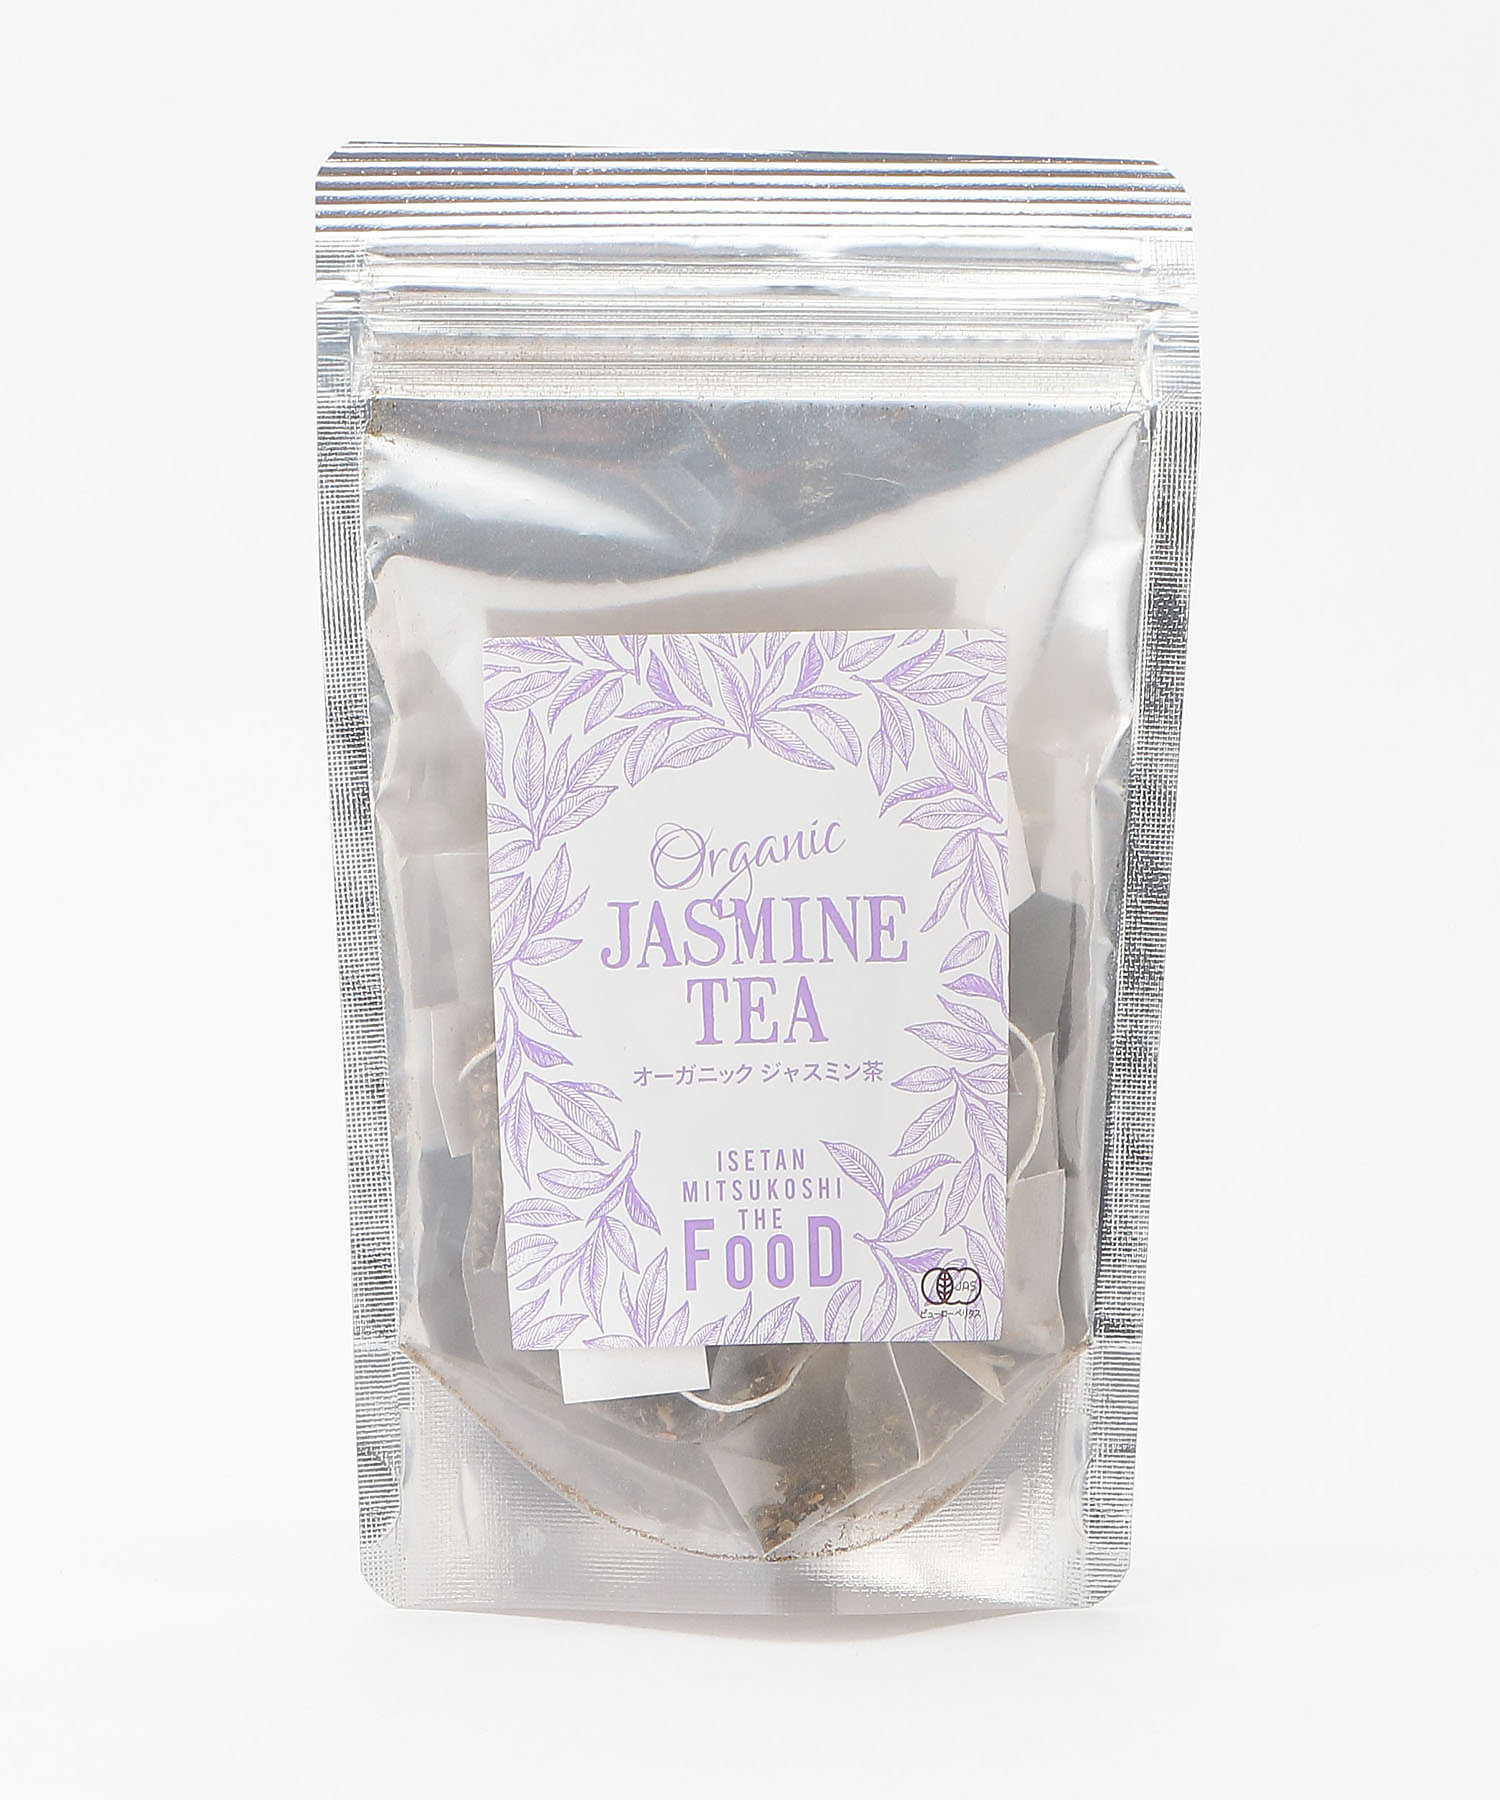 オーガニック ジャスミン茶 | フード・食品 | 三越伊勢丹オンライン